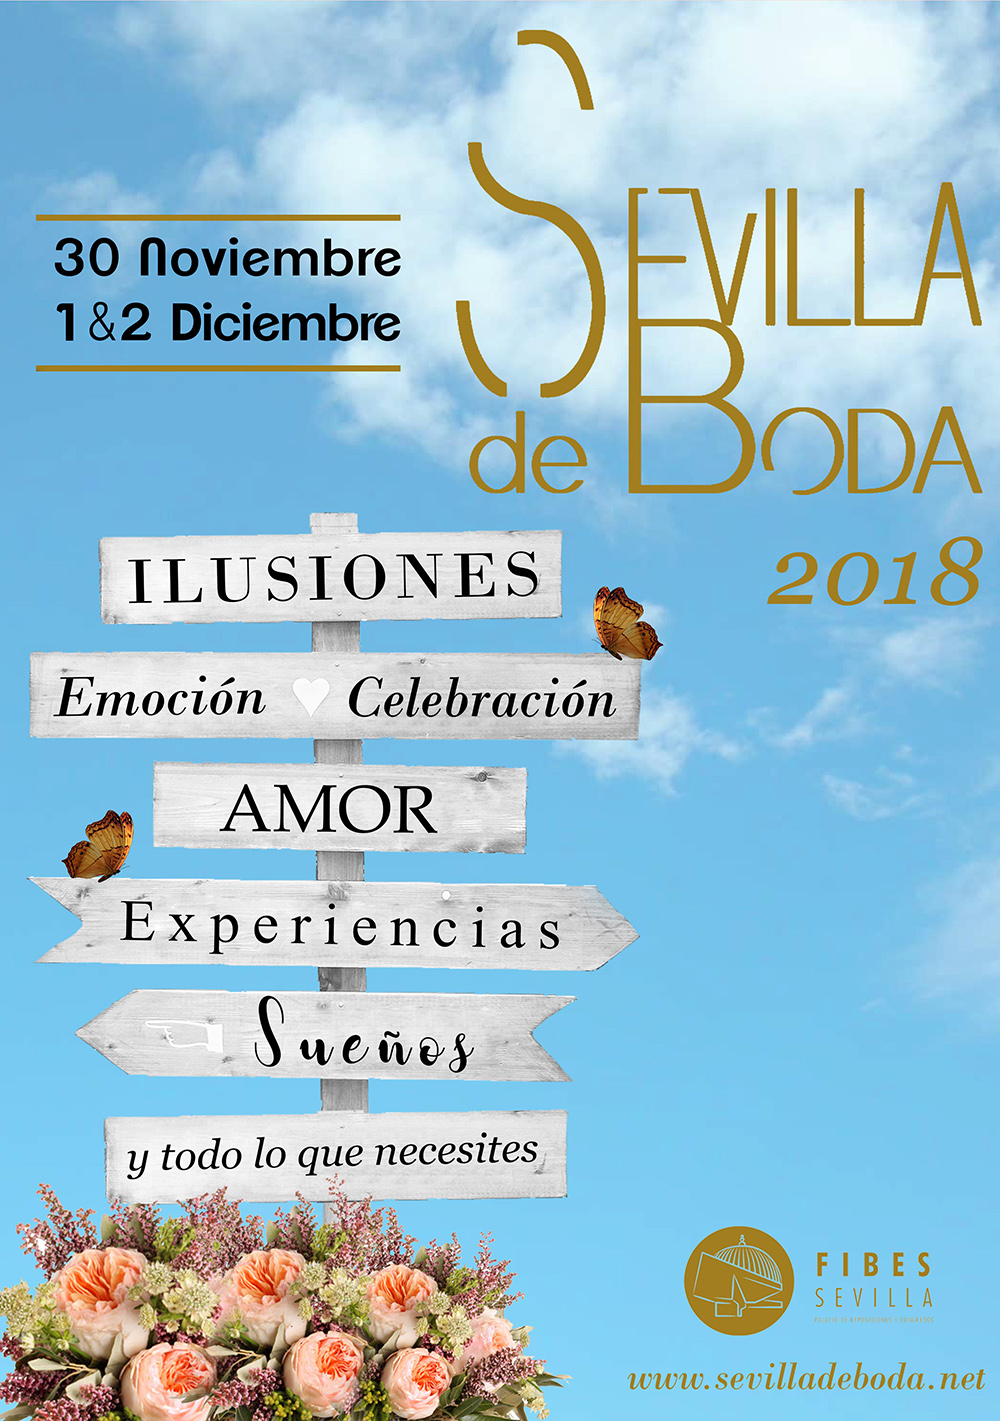 Sevilla de Bodas 2018 in den Fibes